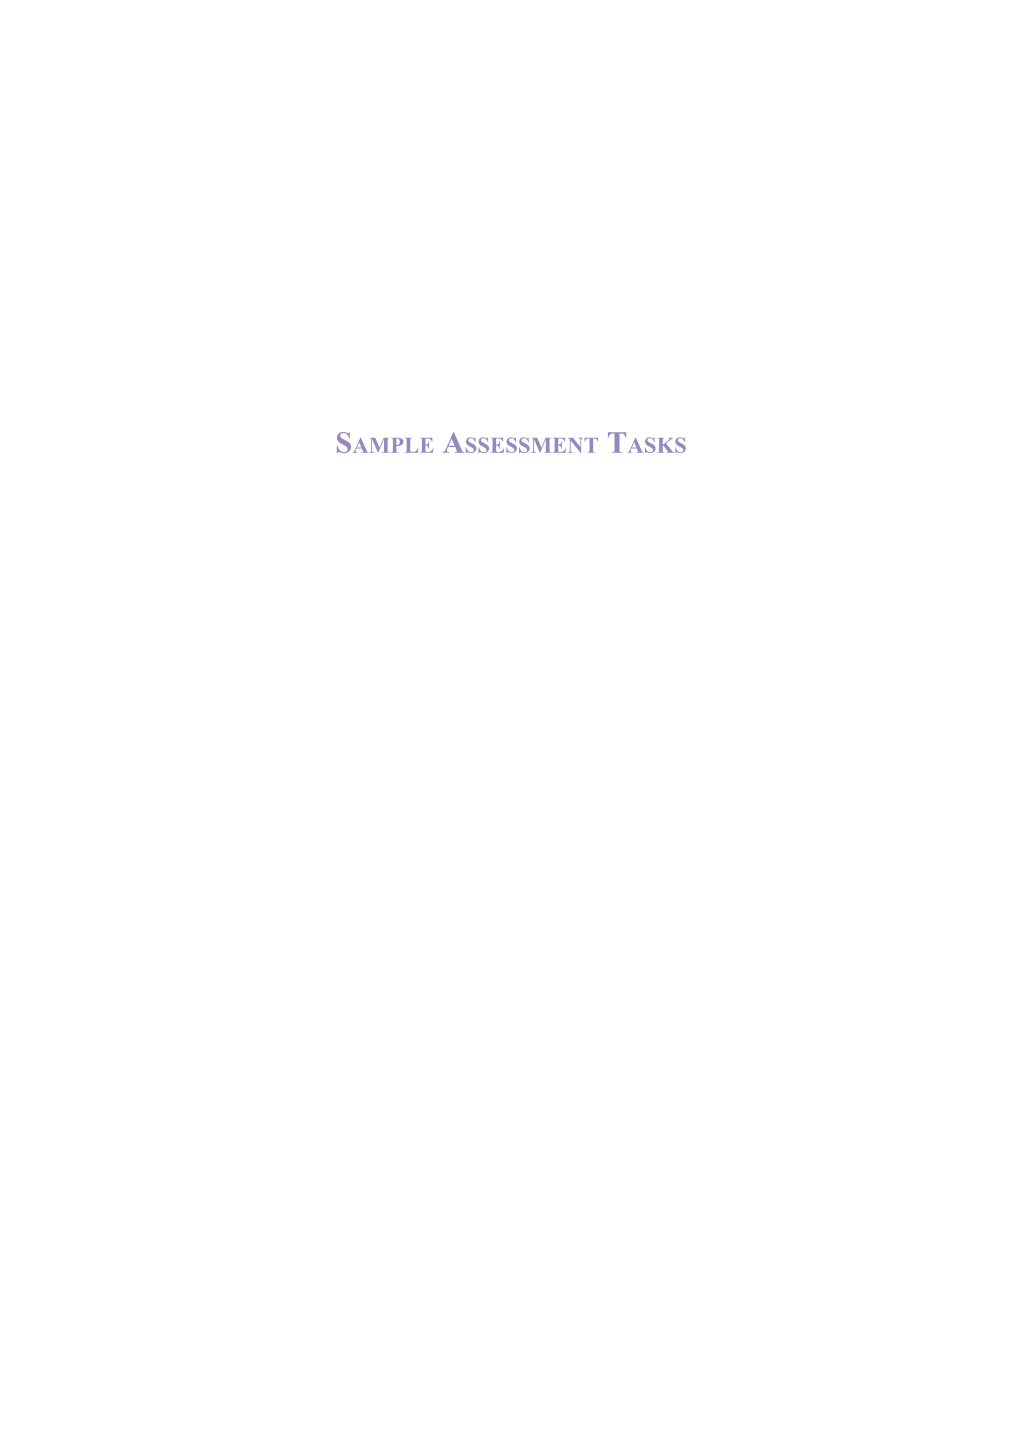 Sample Assessment Tasks